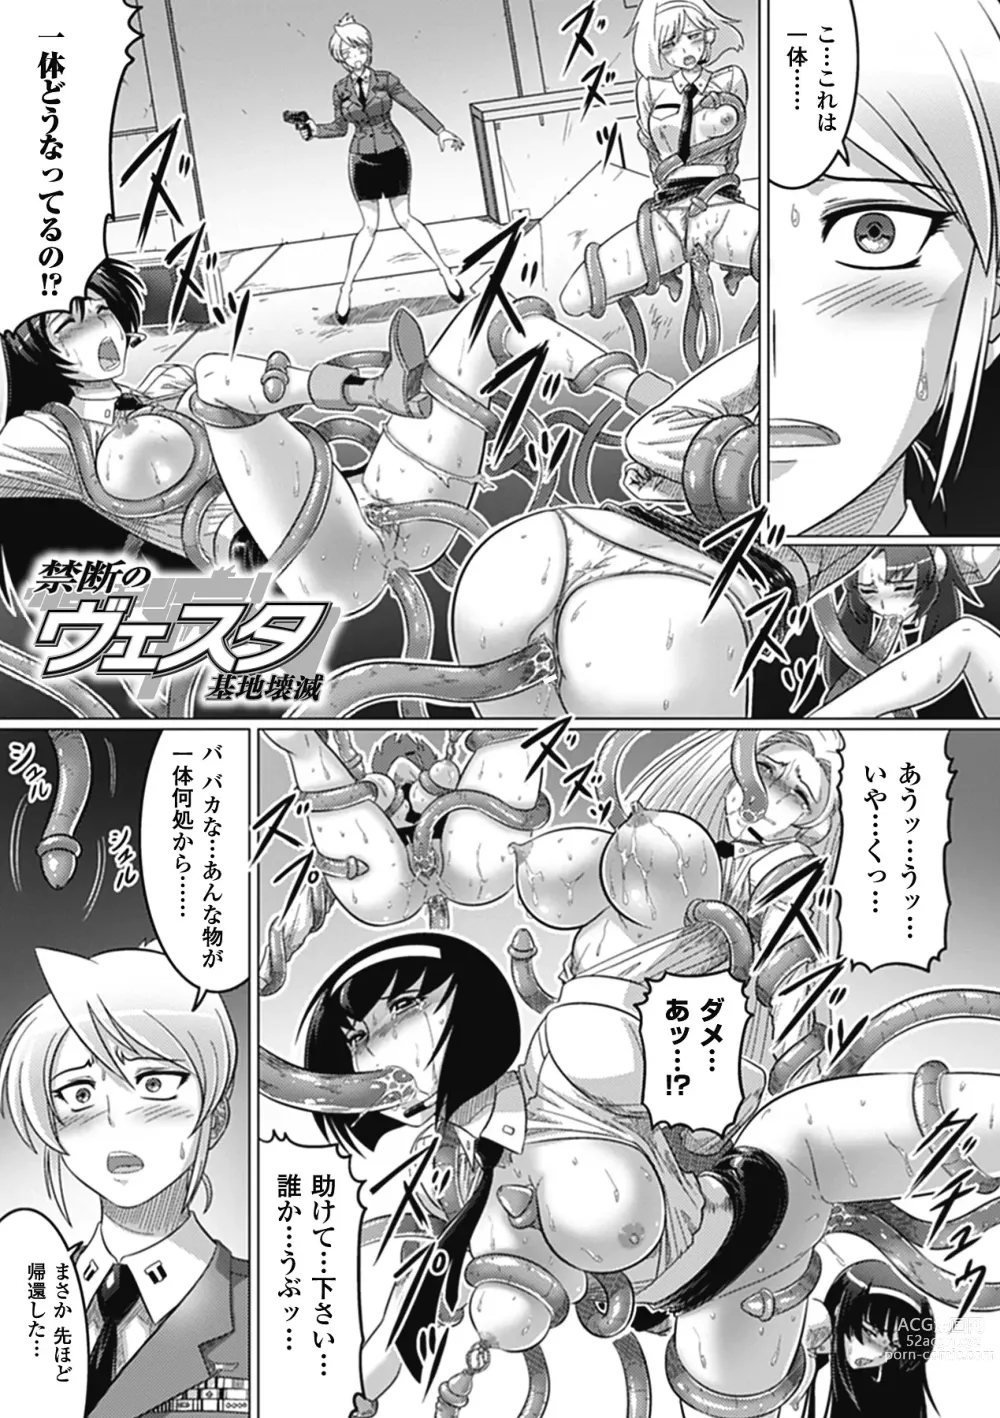 Page 175 of manga Ochita Tenshitachi no Zanei